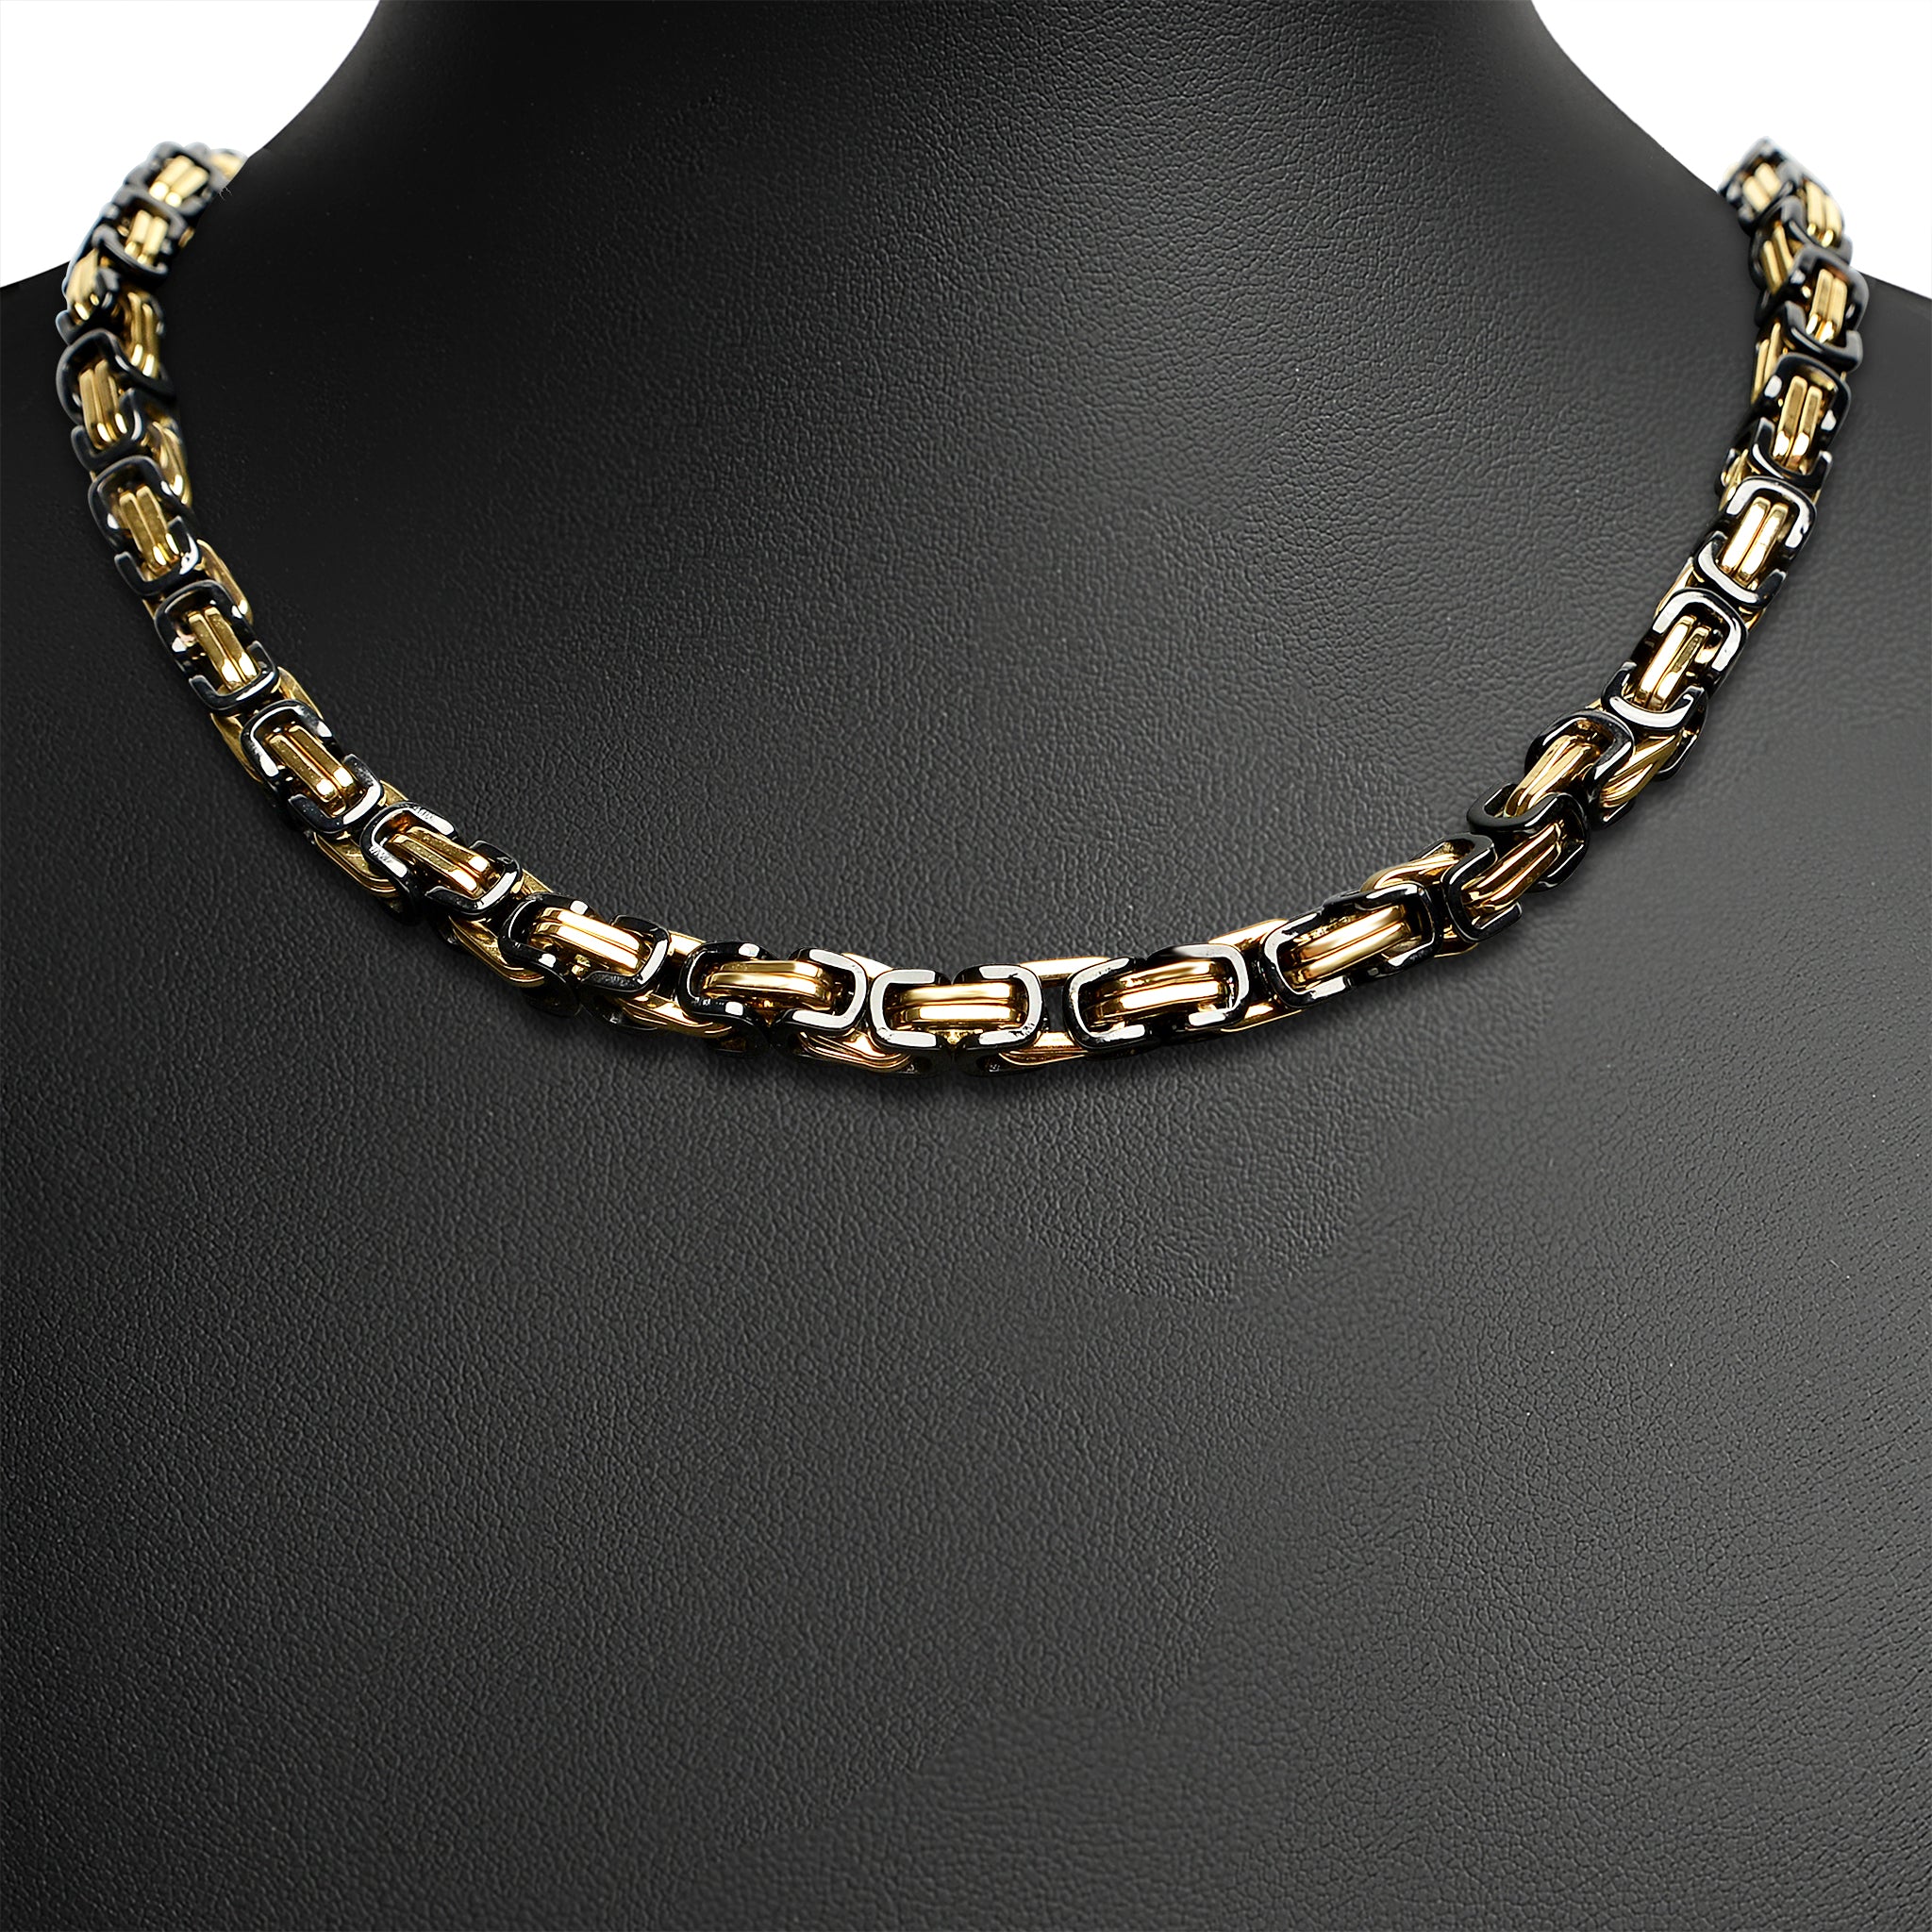 24k solid gold necklace for men